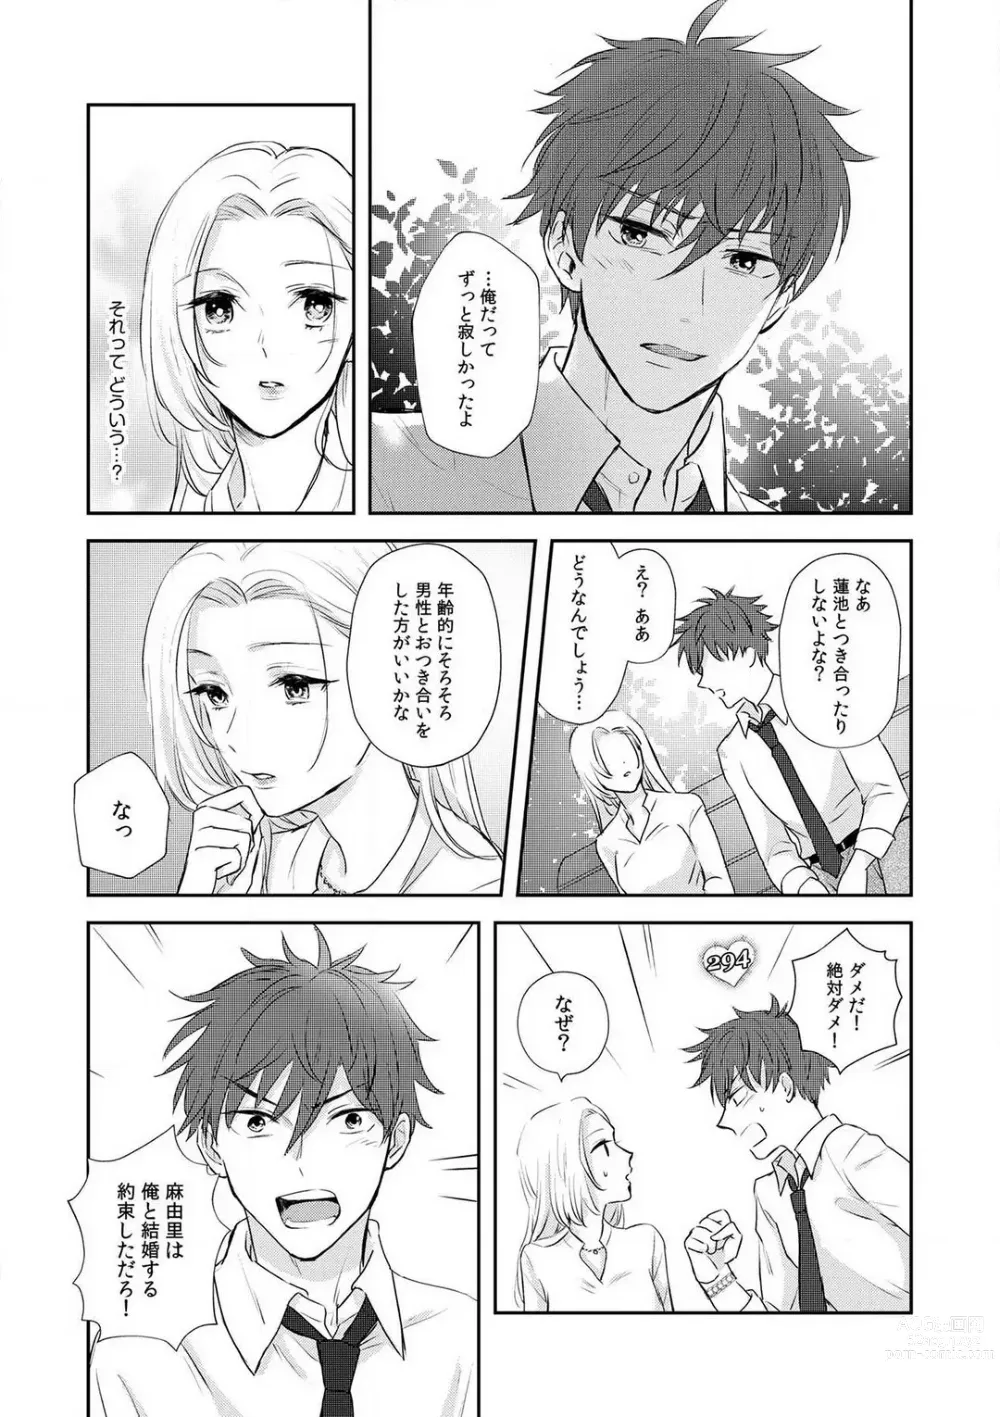 Page 19 of manga Taiikukaikei Osananajimi wa Sekaiichi no Dekiaidanshi 〜 Zen Jinrui no Kōkan-do ga Aru hi Mieta Rikejo no Watashi~Chp.1-2